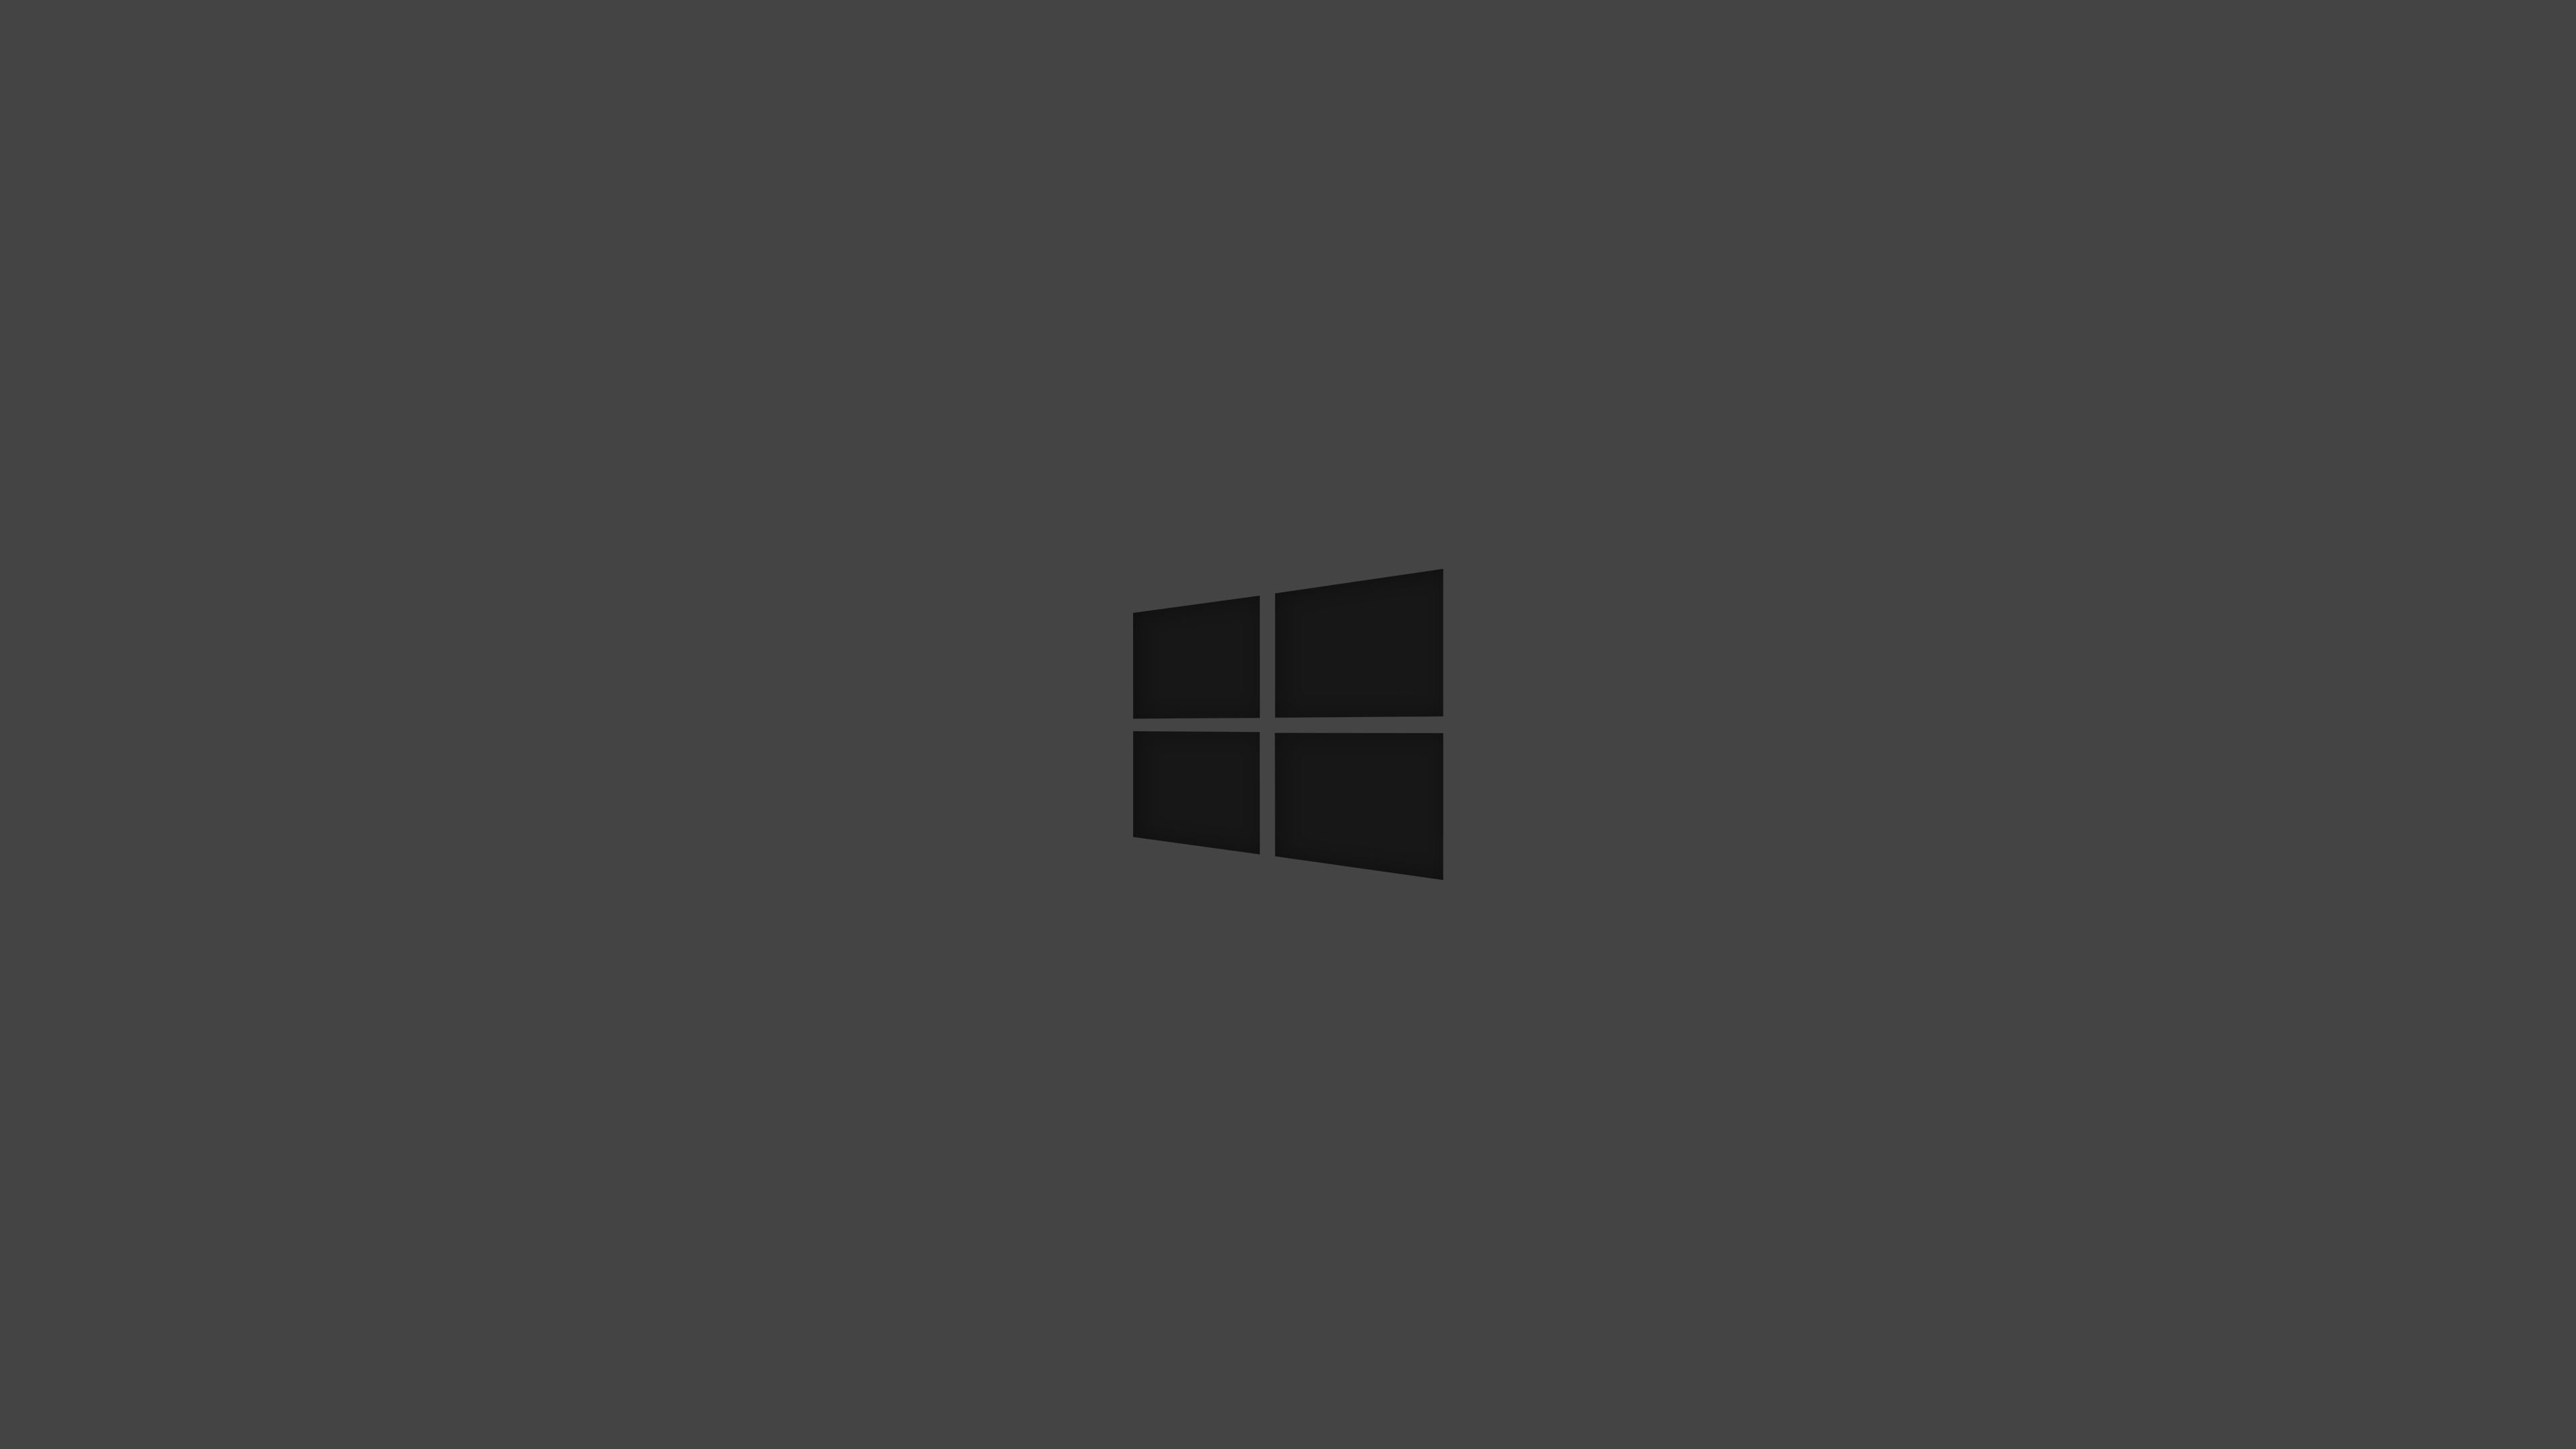 Windows 10 Dark Wallpapers - Top Free Windows 10 Dark Backgrounds ...